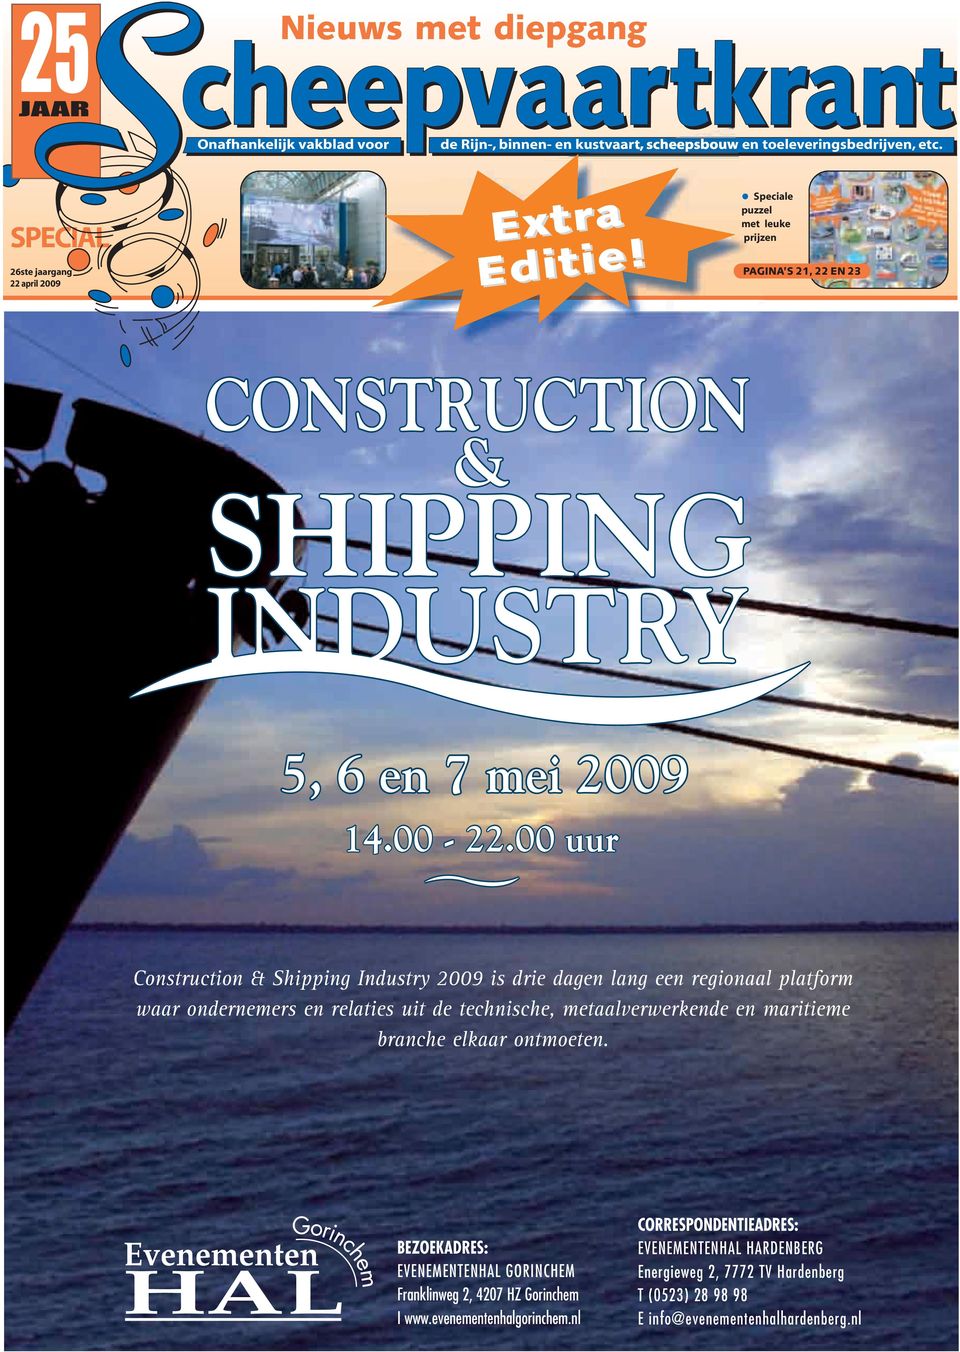 00 uur Construction & Shipping Industry 2009 is drie dagen lang een regionaal platform waar ondernemers en relaties uit de technische, metaalverwerkende en maritieme branche